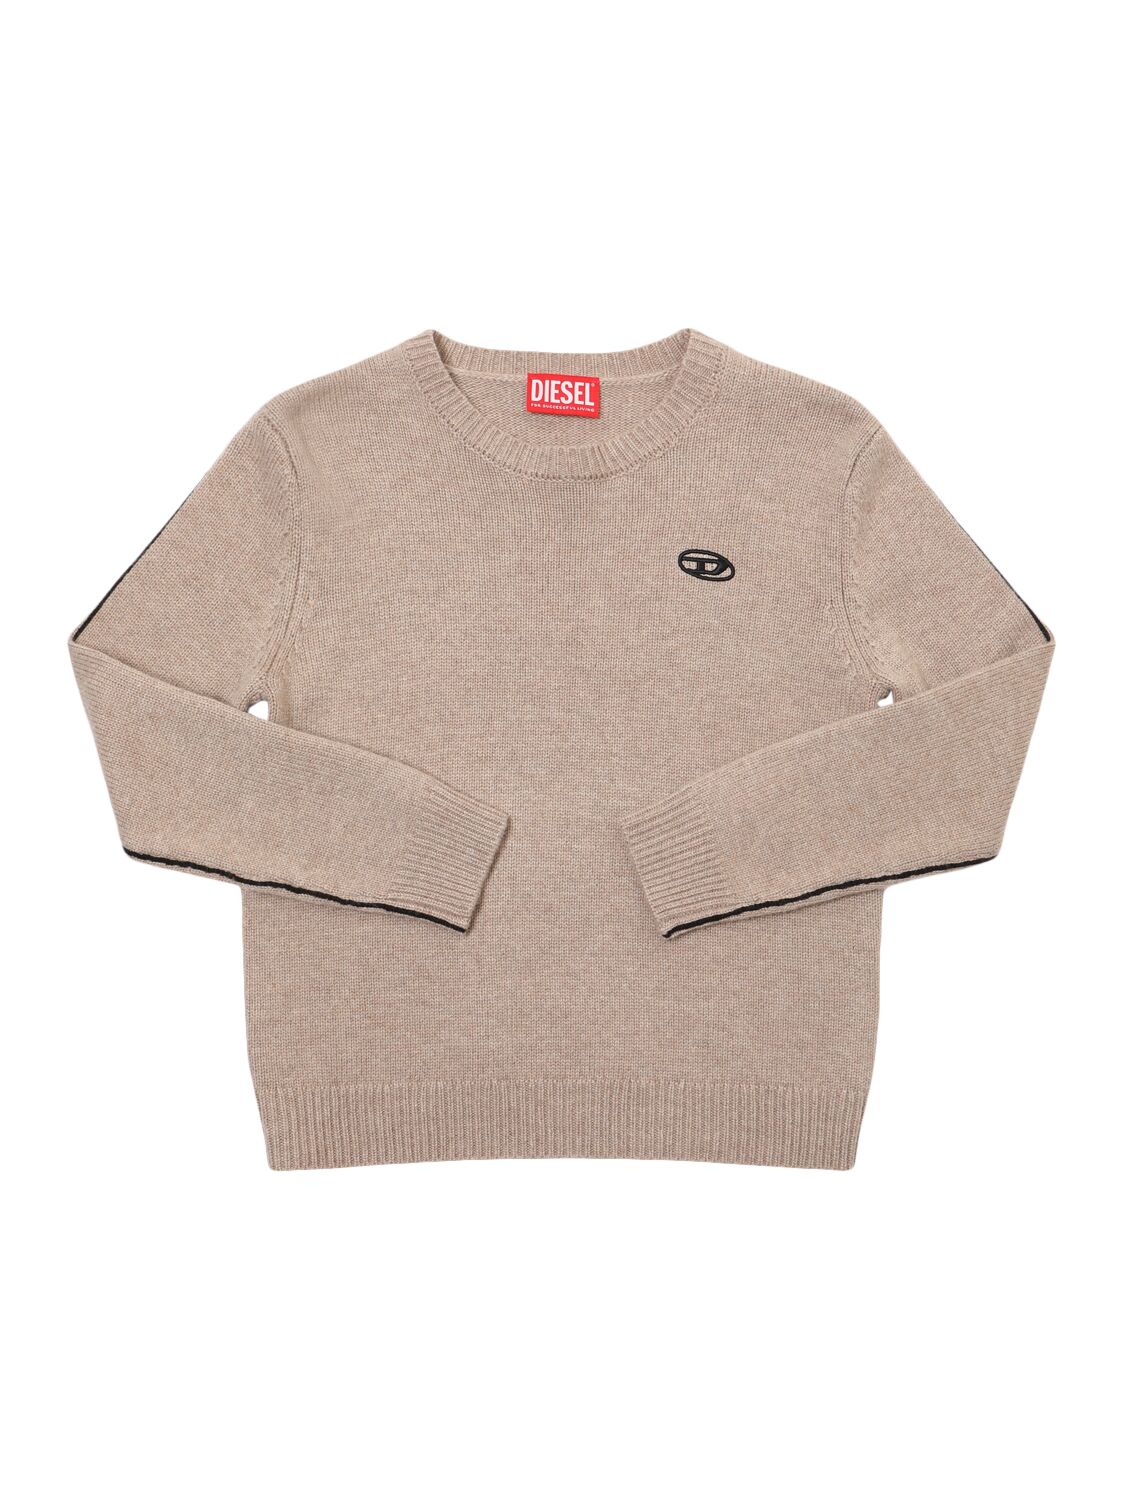 Diesel Wool Blend Knit Sweater In Brown